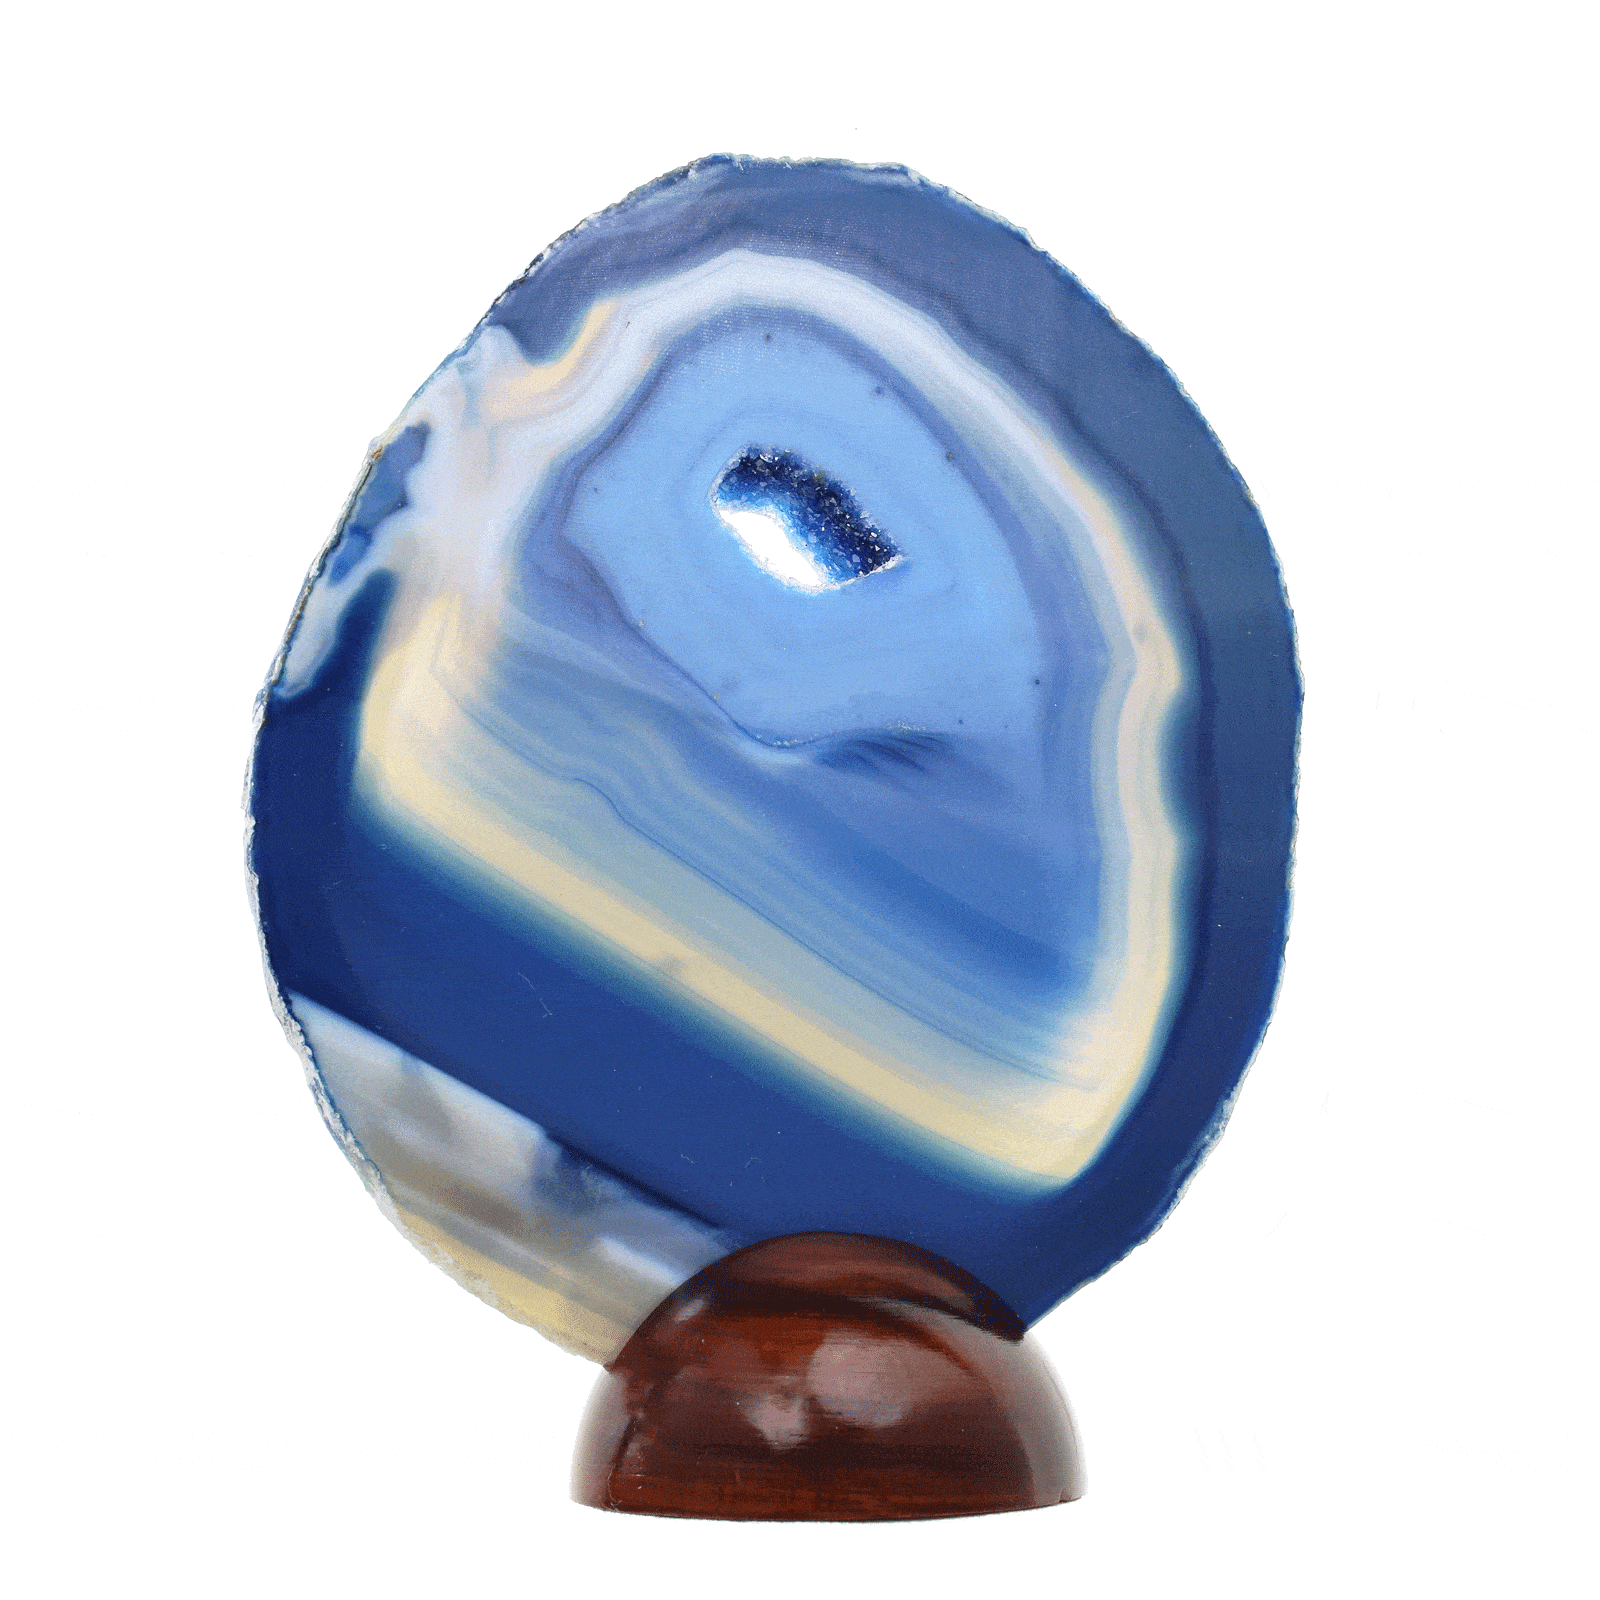 Φυσική φέτα Αχάτη μπλε χρώματος με κρύσταλλα χαλαζία. O Αχάτης είναι γυαλισμένος στις δύο όψεις του, έχει ύψος 14cm και είναι τοποθετημένος σε ξύλινη βάση. Αγοράστε online shop.